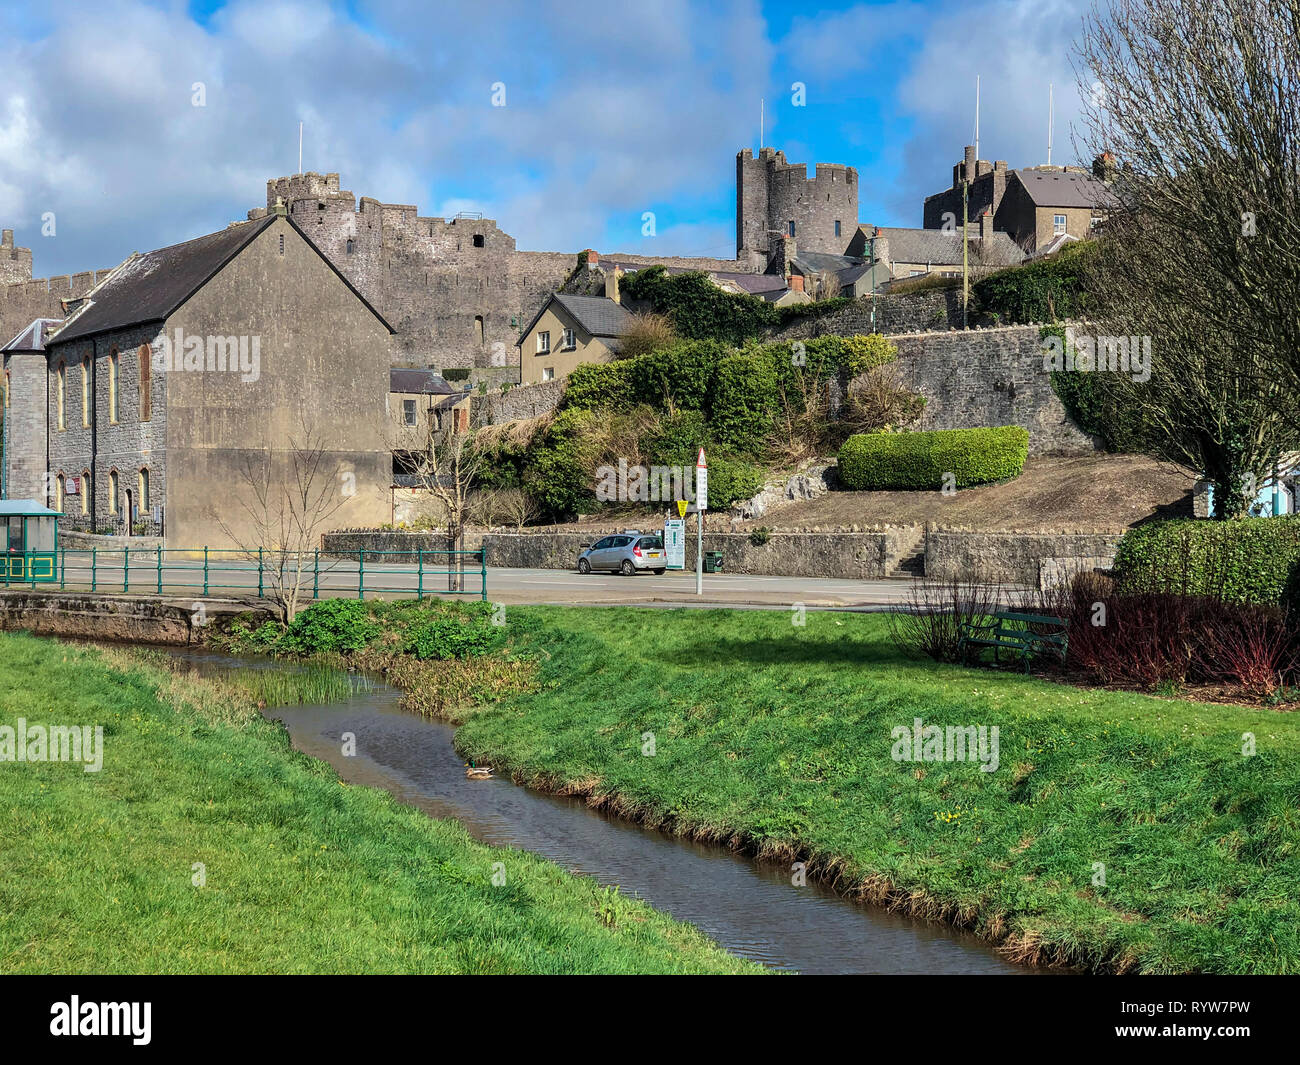 La ville de Pembroke et Pembroke Castle - château médiéval dans la région de Pembrokeshire, Pays de Galles. Banque D'Images